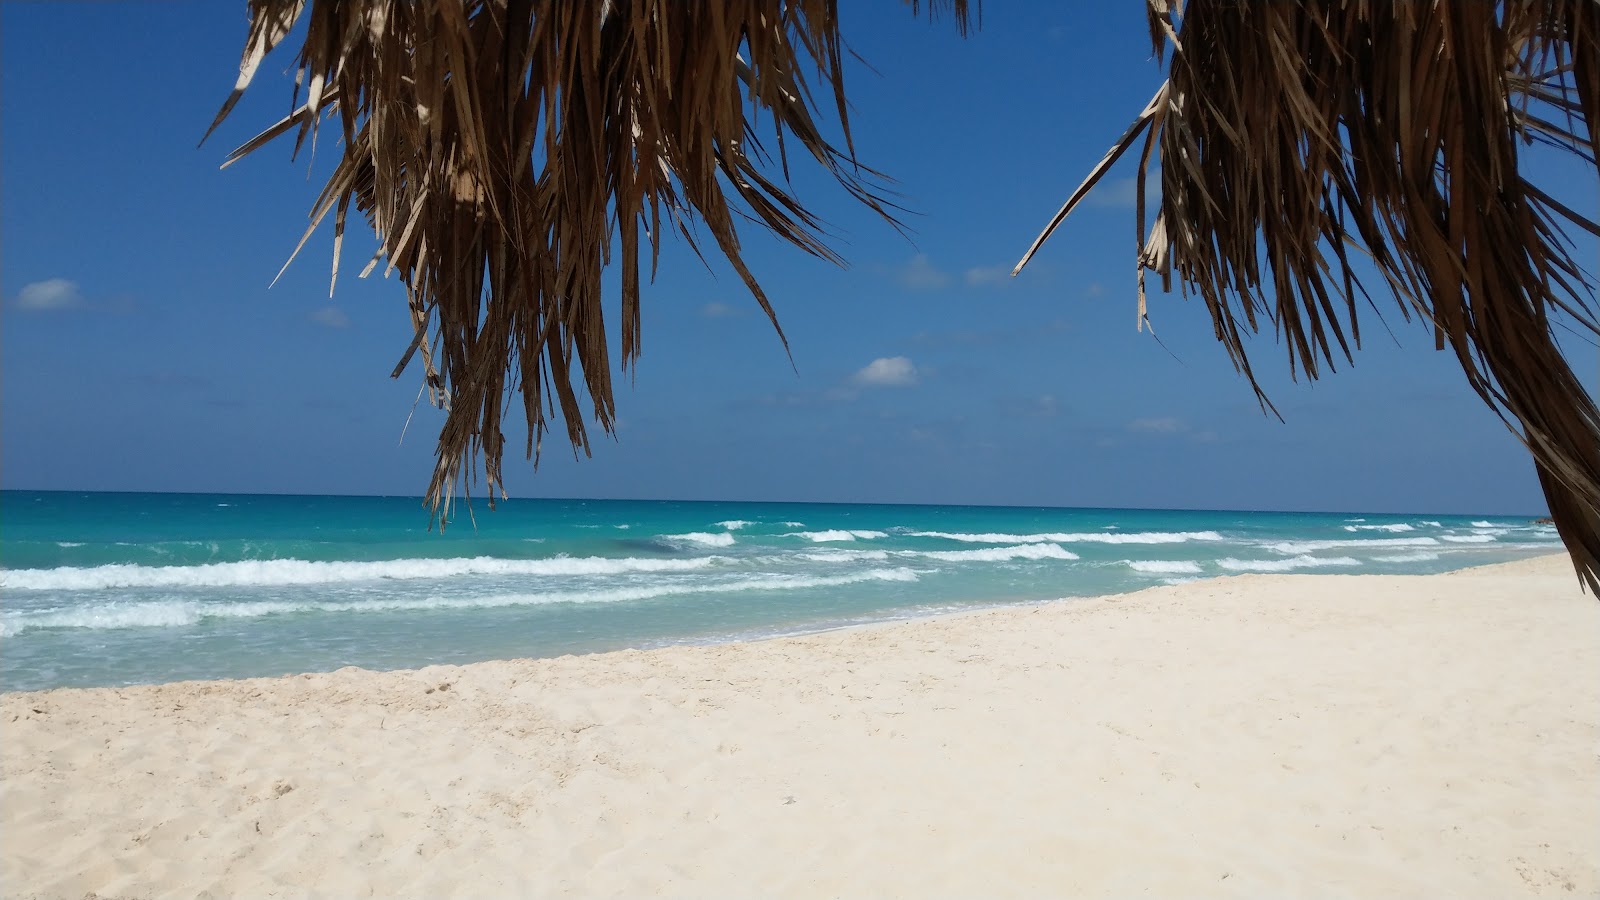 Fotografie cu El-Rowad Beach - locul popular printre cunoscătorii de relaxare